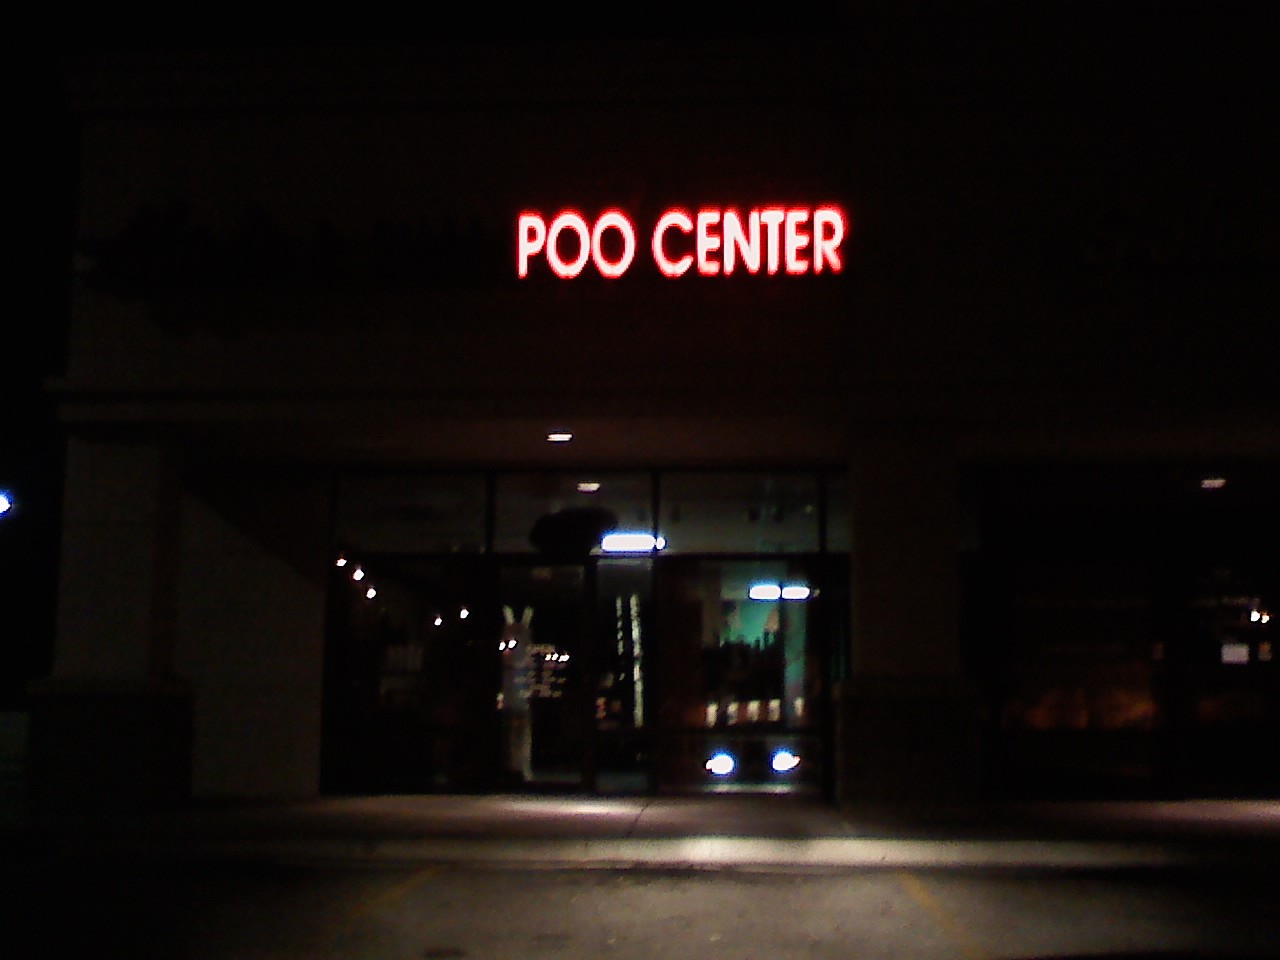 the poo center in Wichita, KS